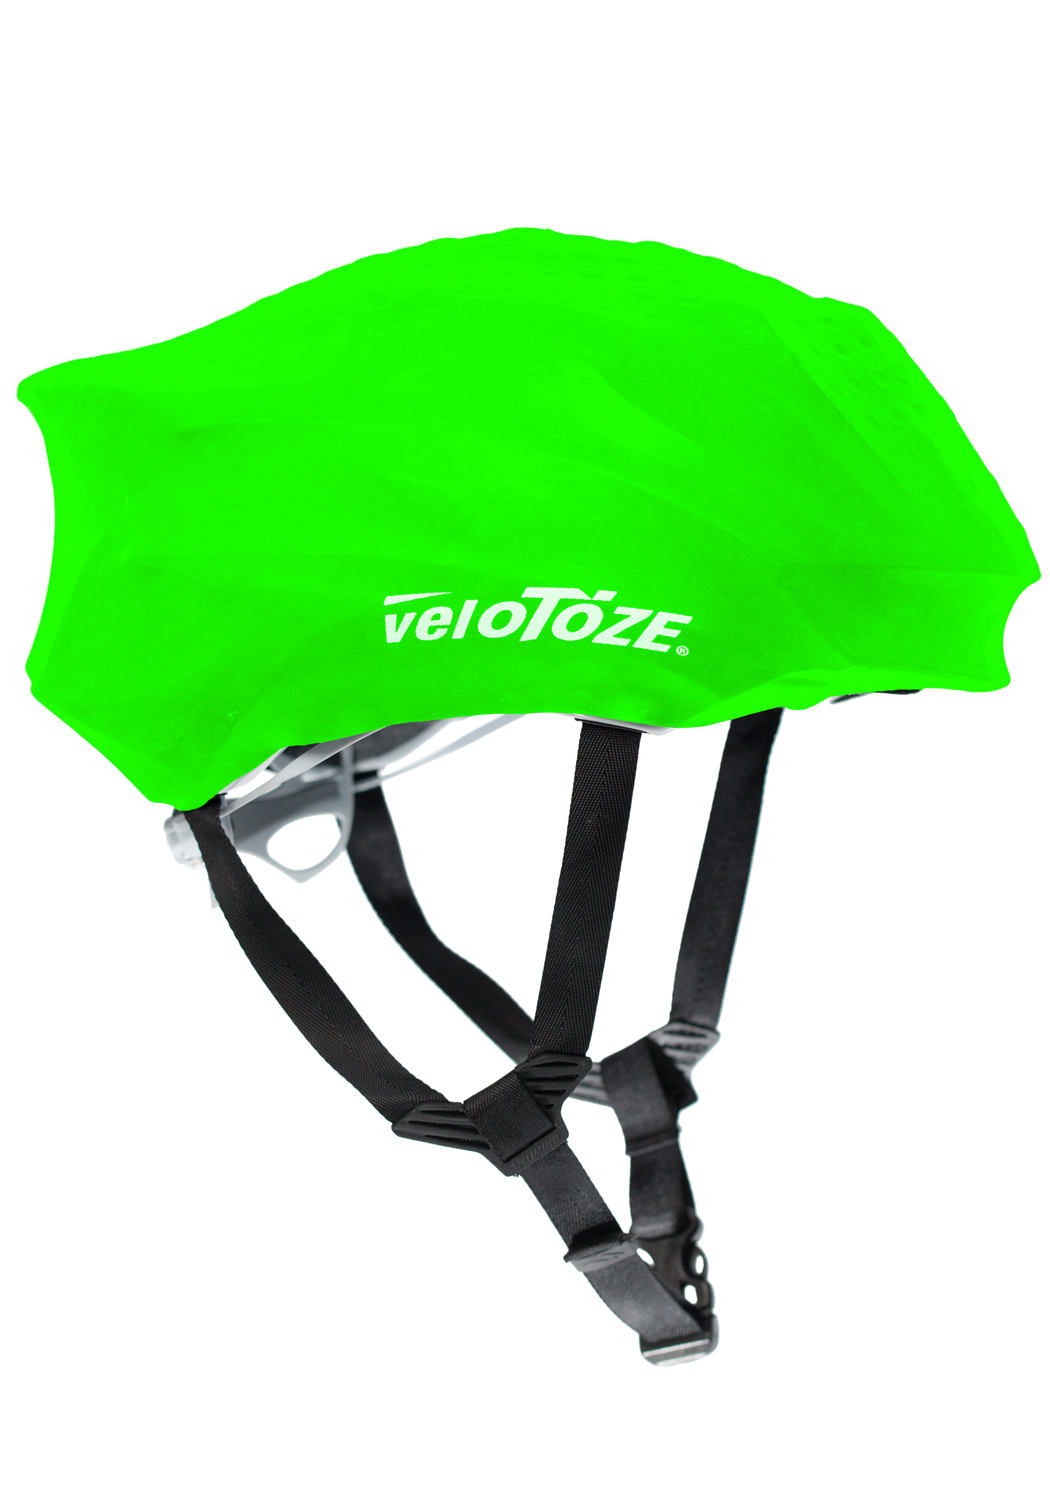 velotoze waterproof cycling glove